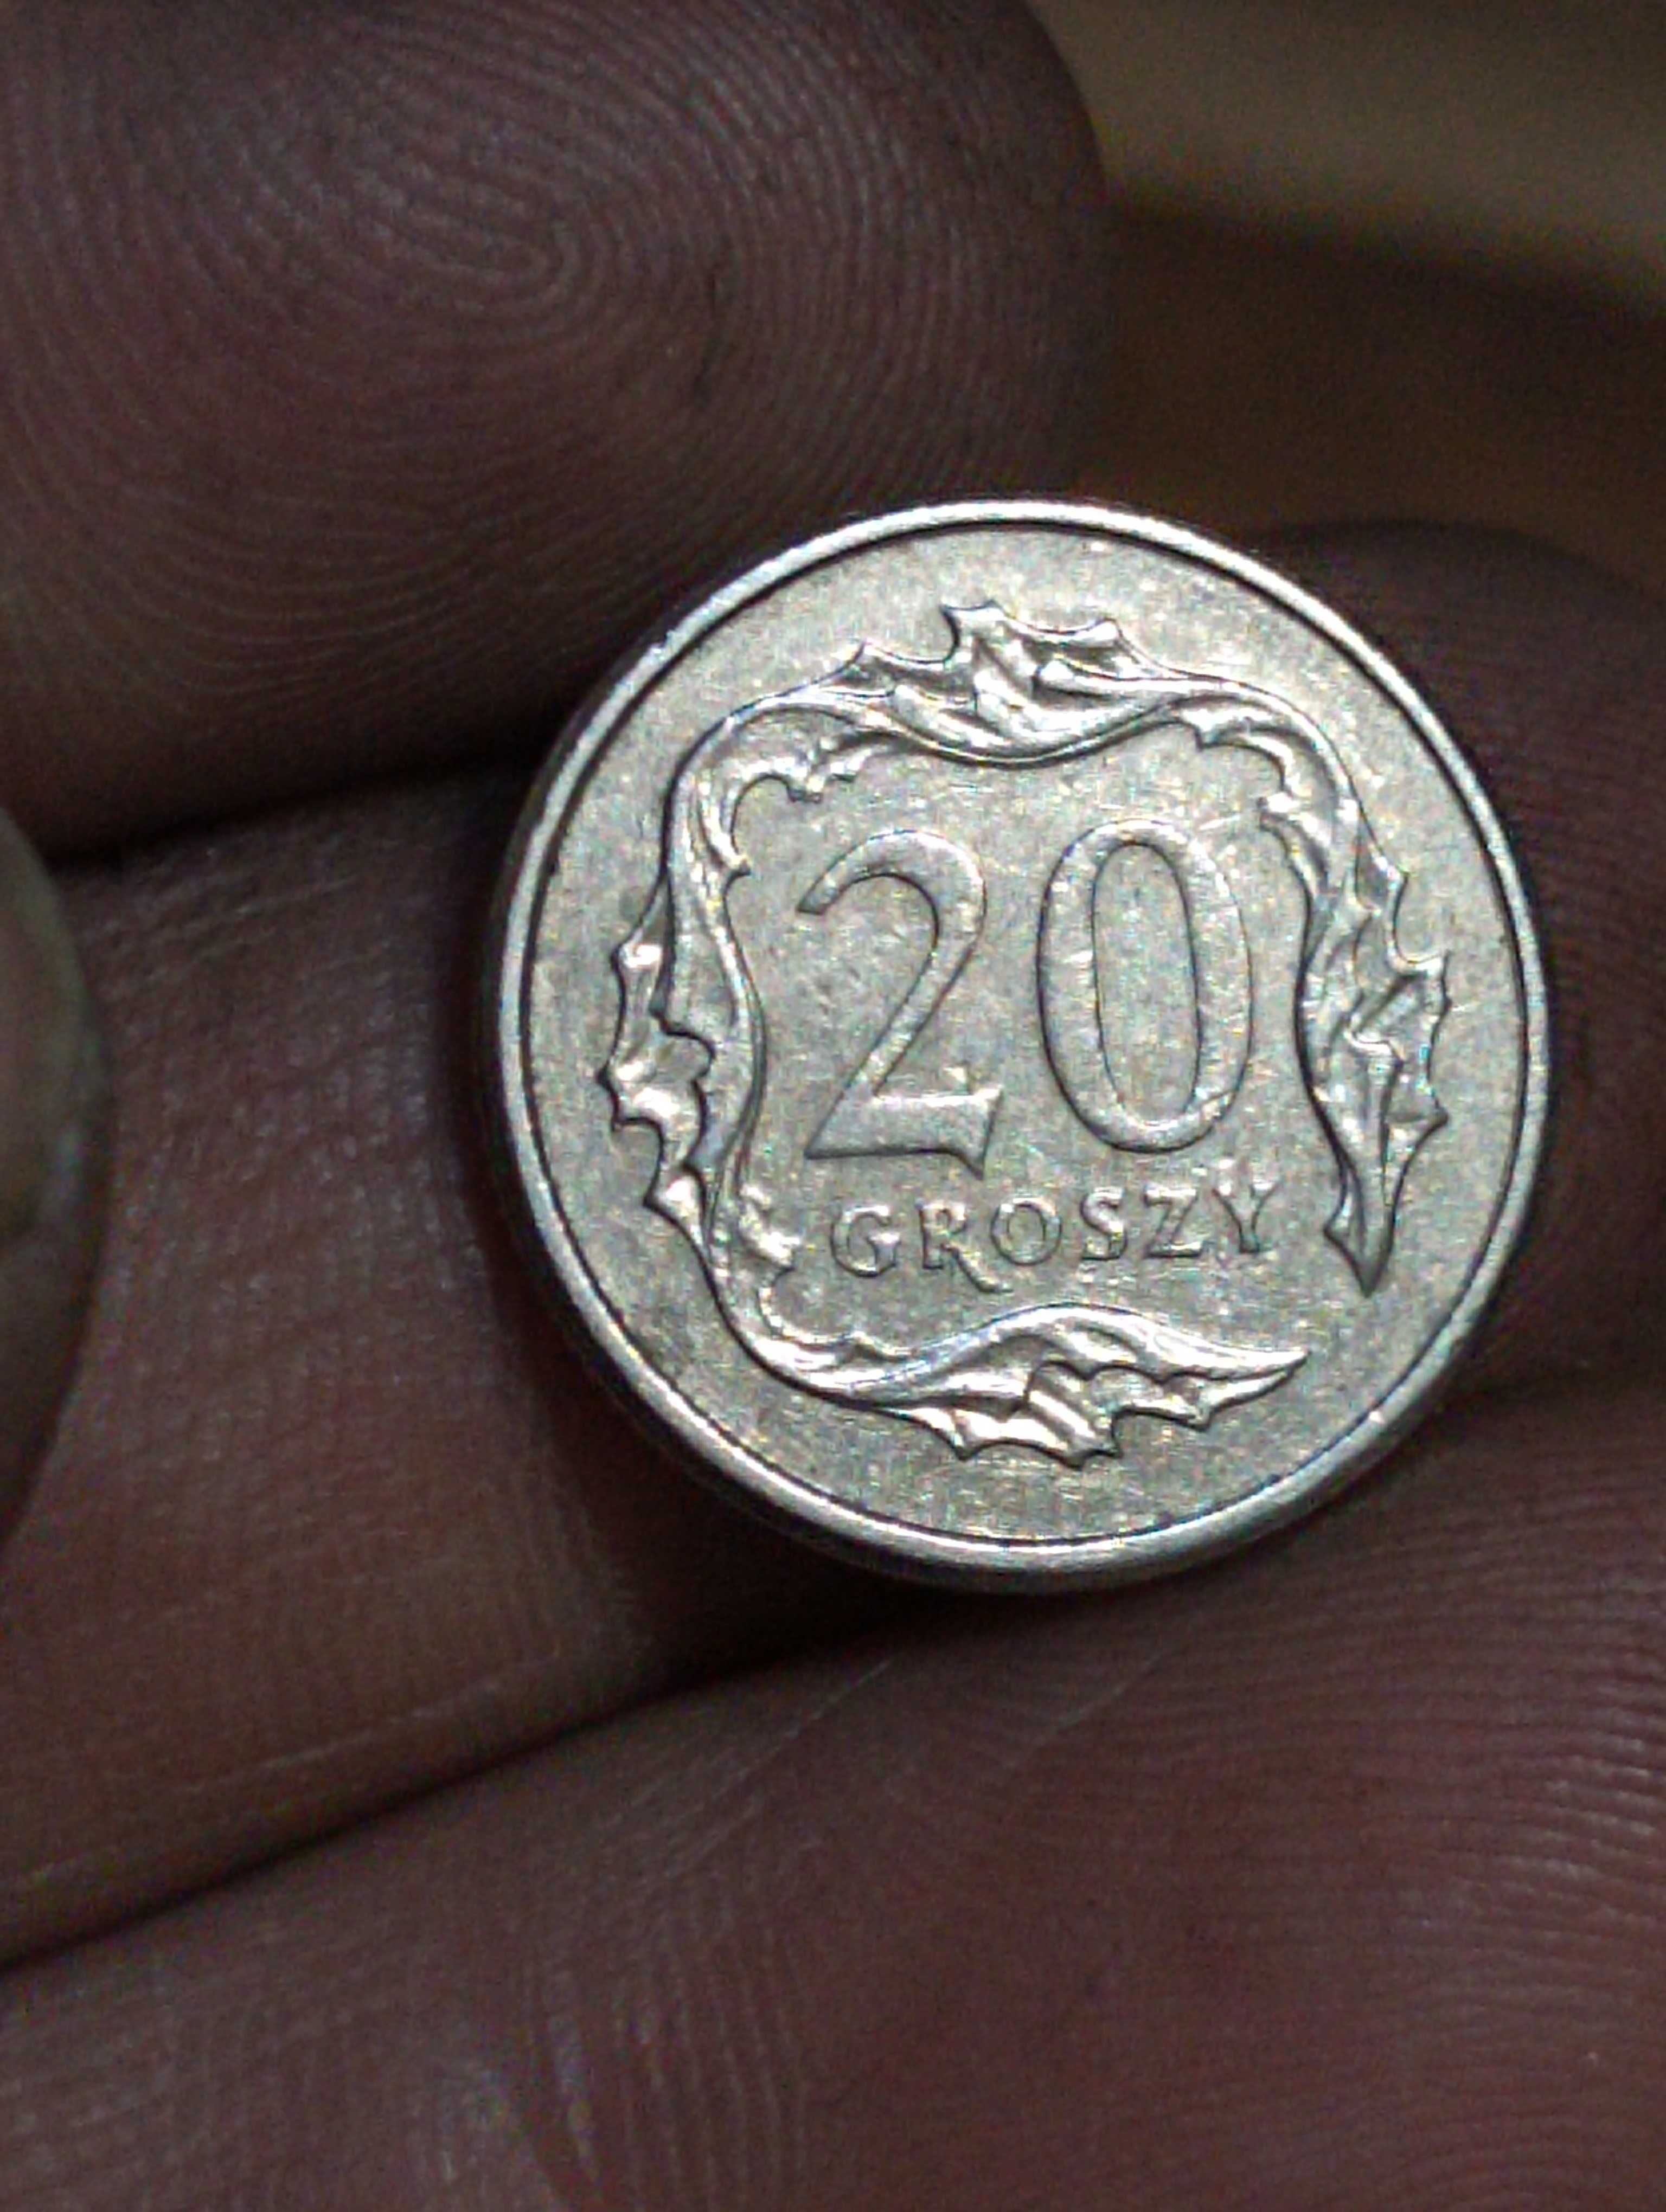 Moneta 29 gr 2008 zle bita data zalane napisy